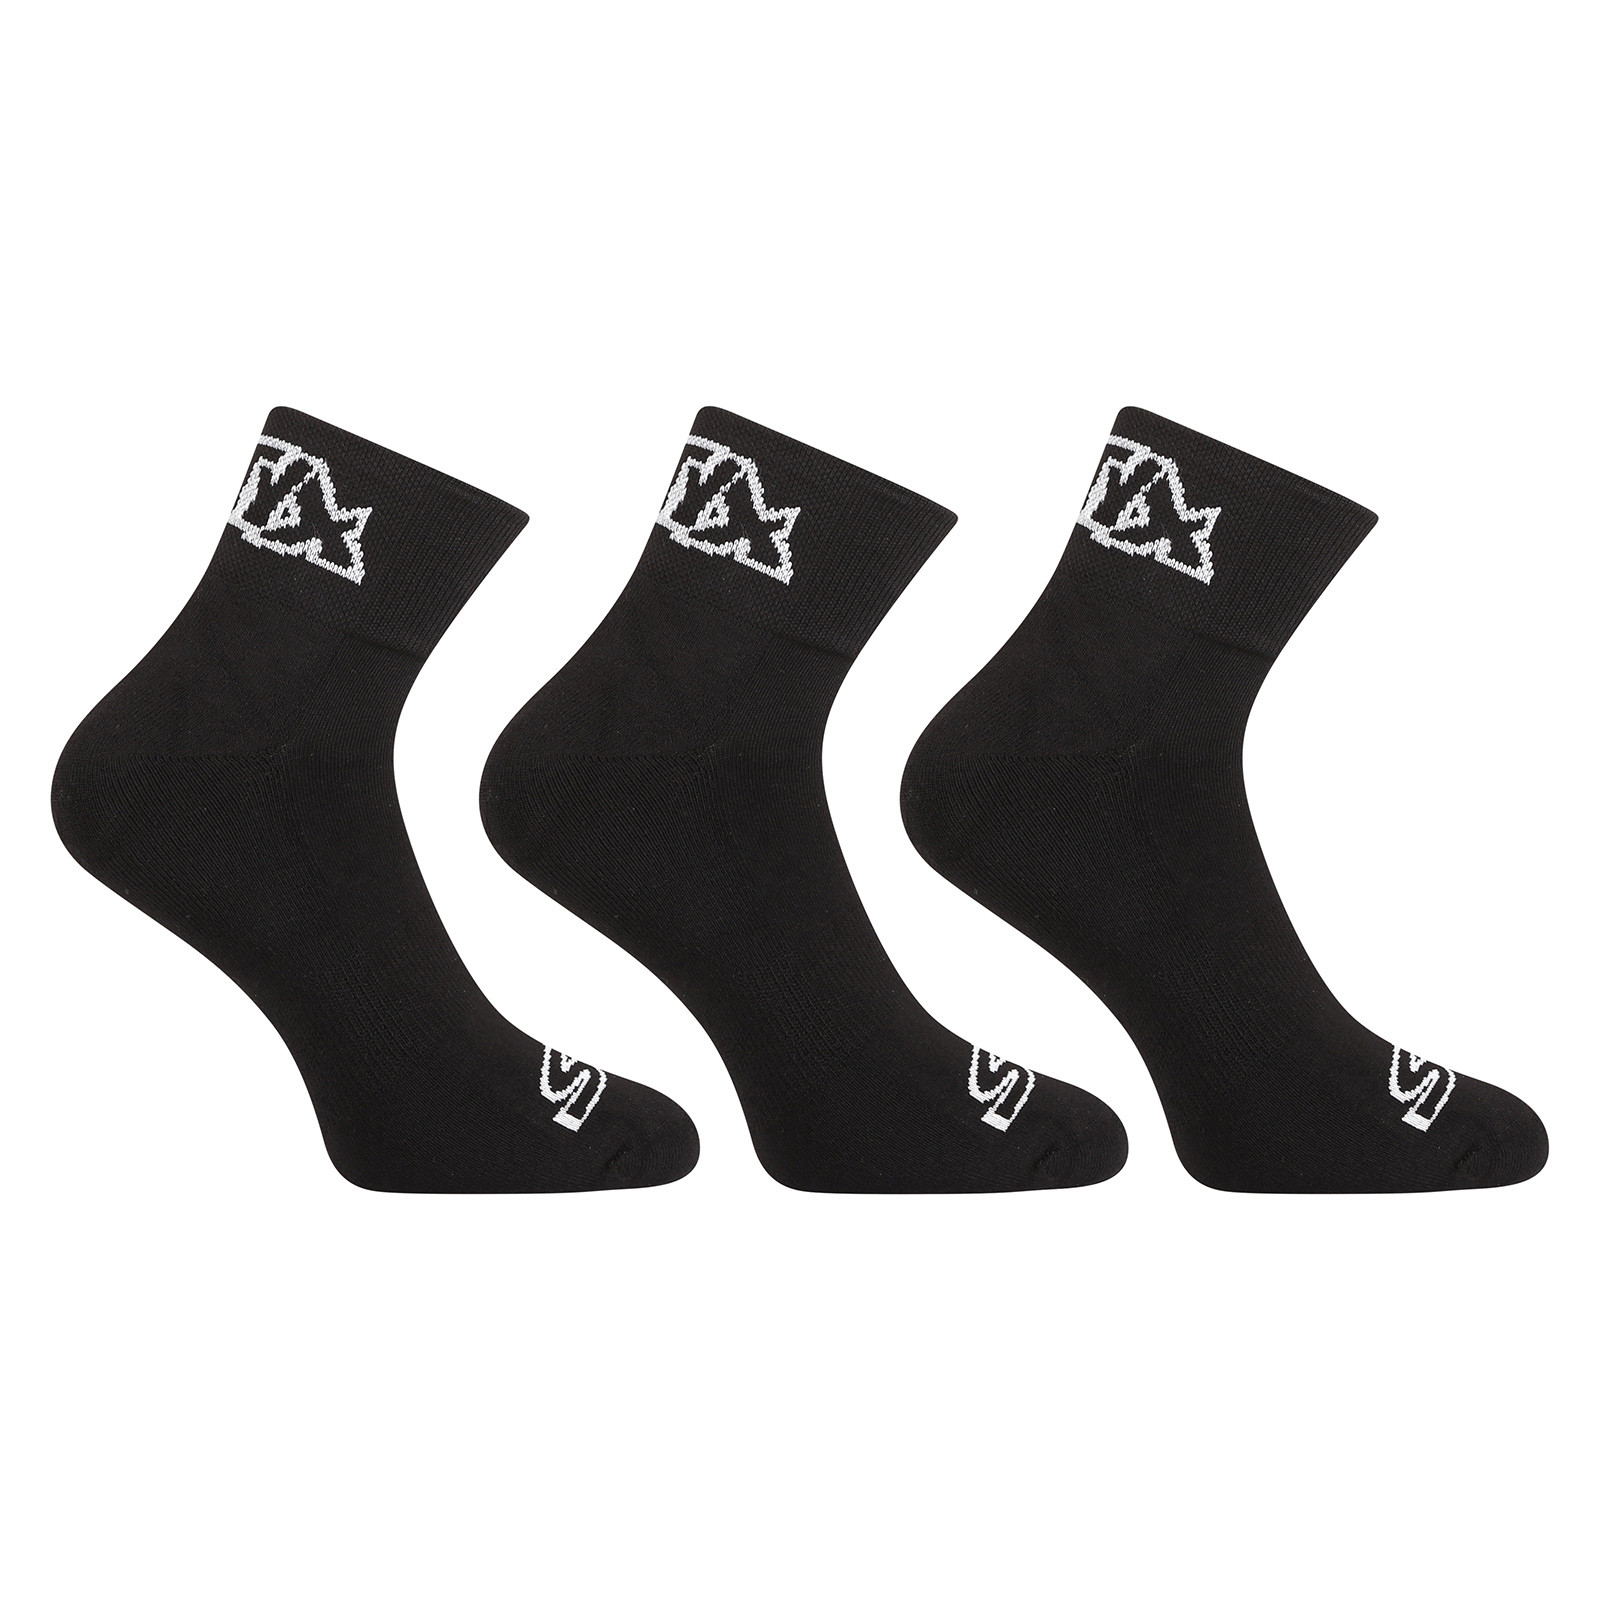 E-shop 3PACK ponožky Styx kotníkové černé